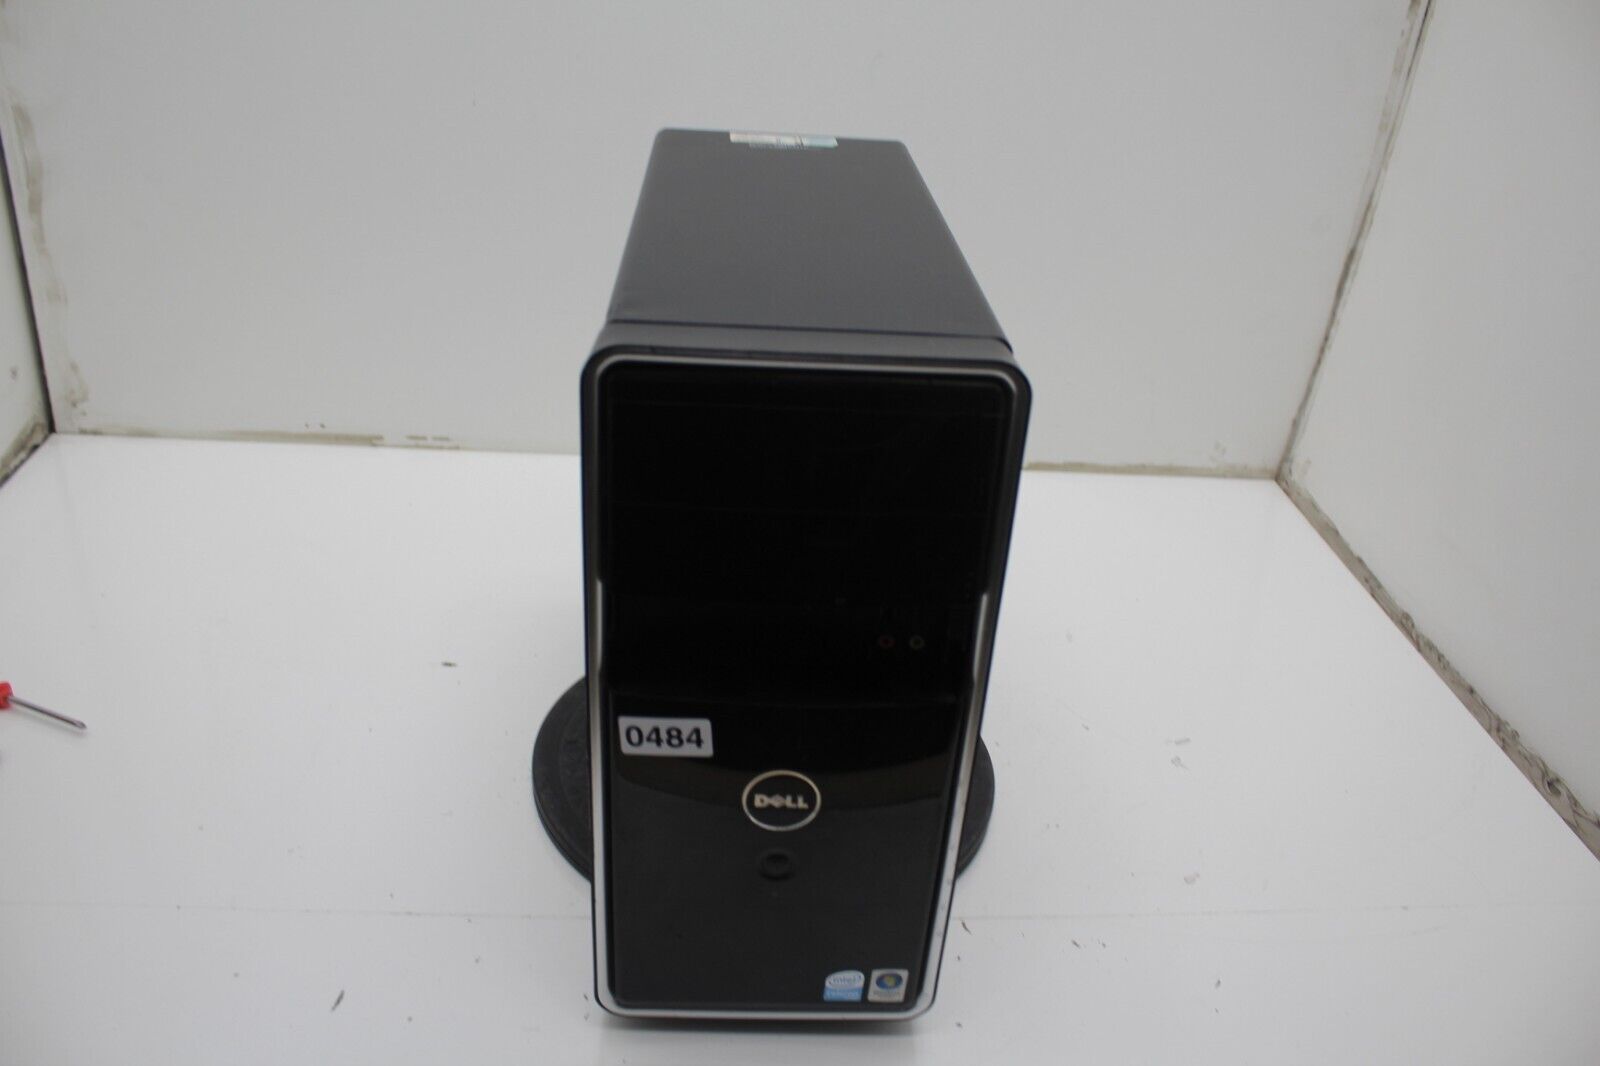 Dell Inspiron 537 Desktop Computer Intel Celeron 450 2GB Ram No HDD